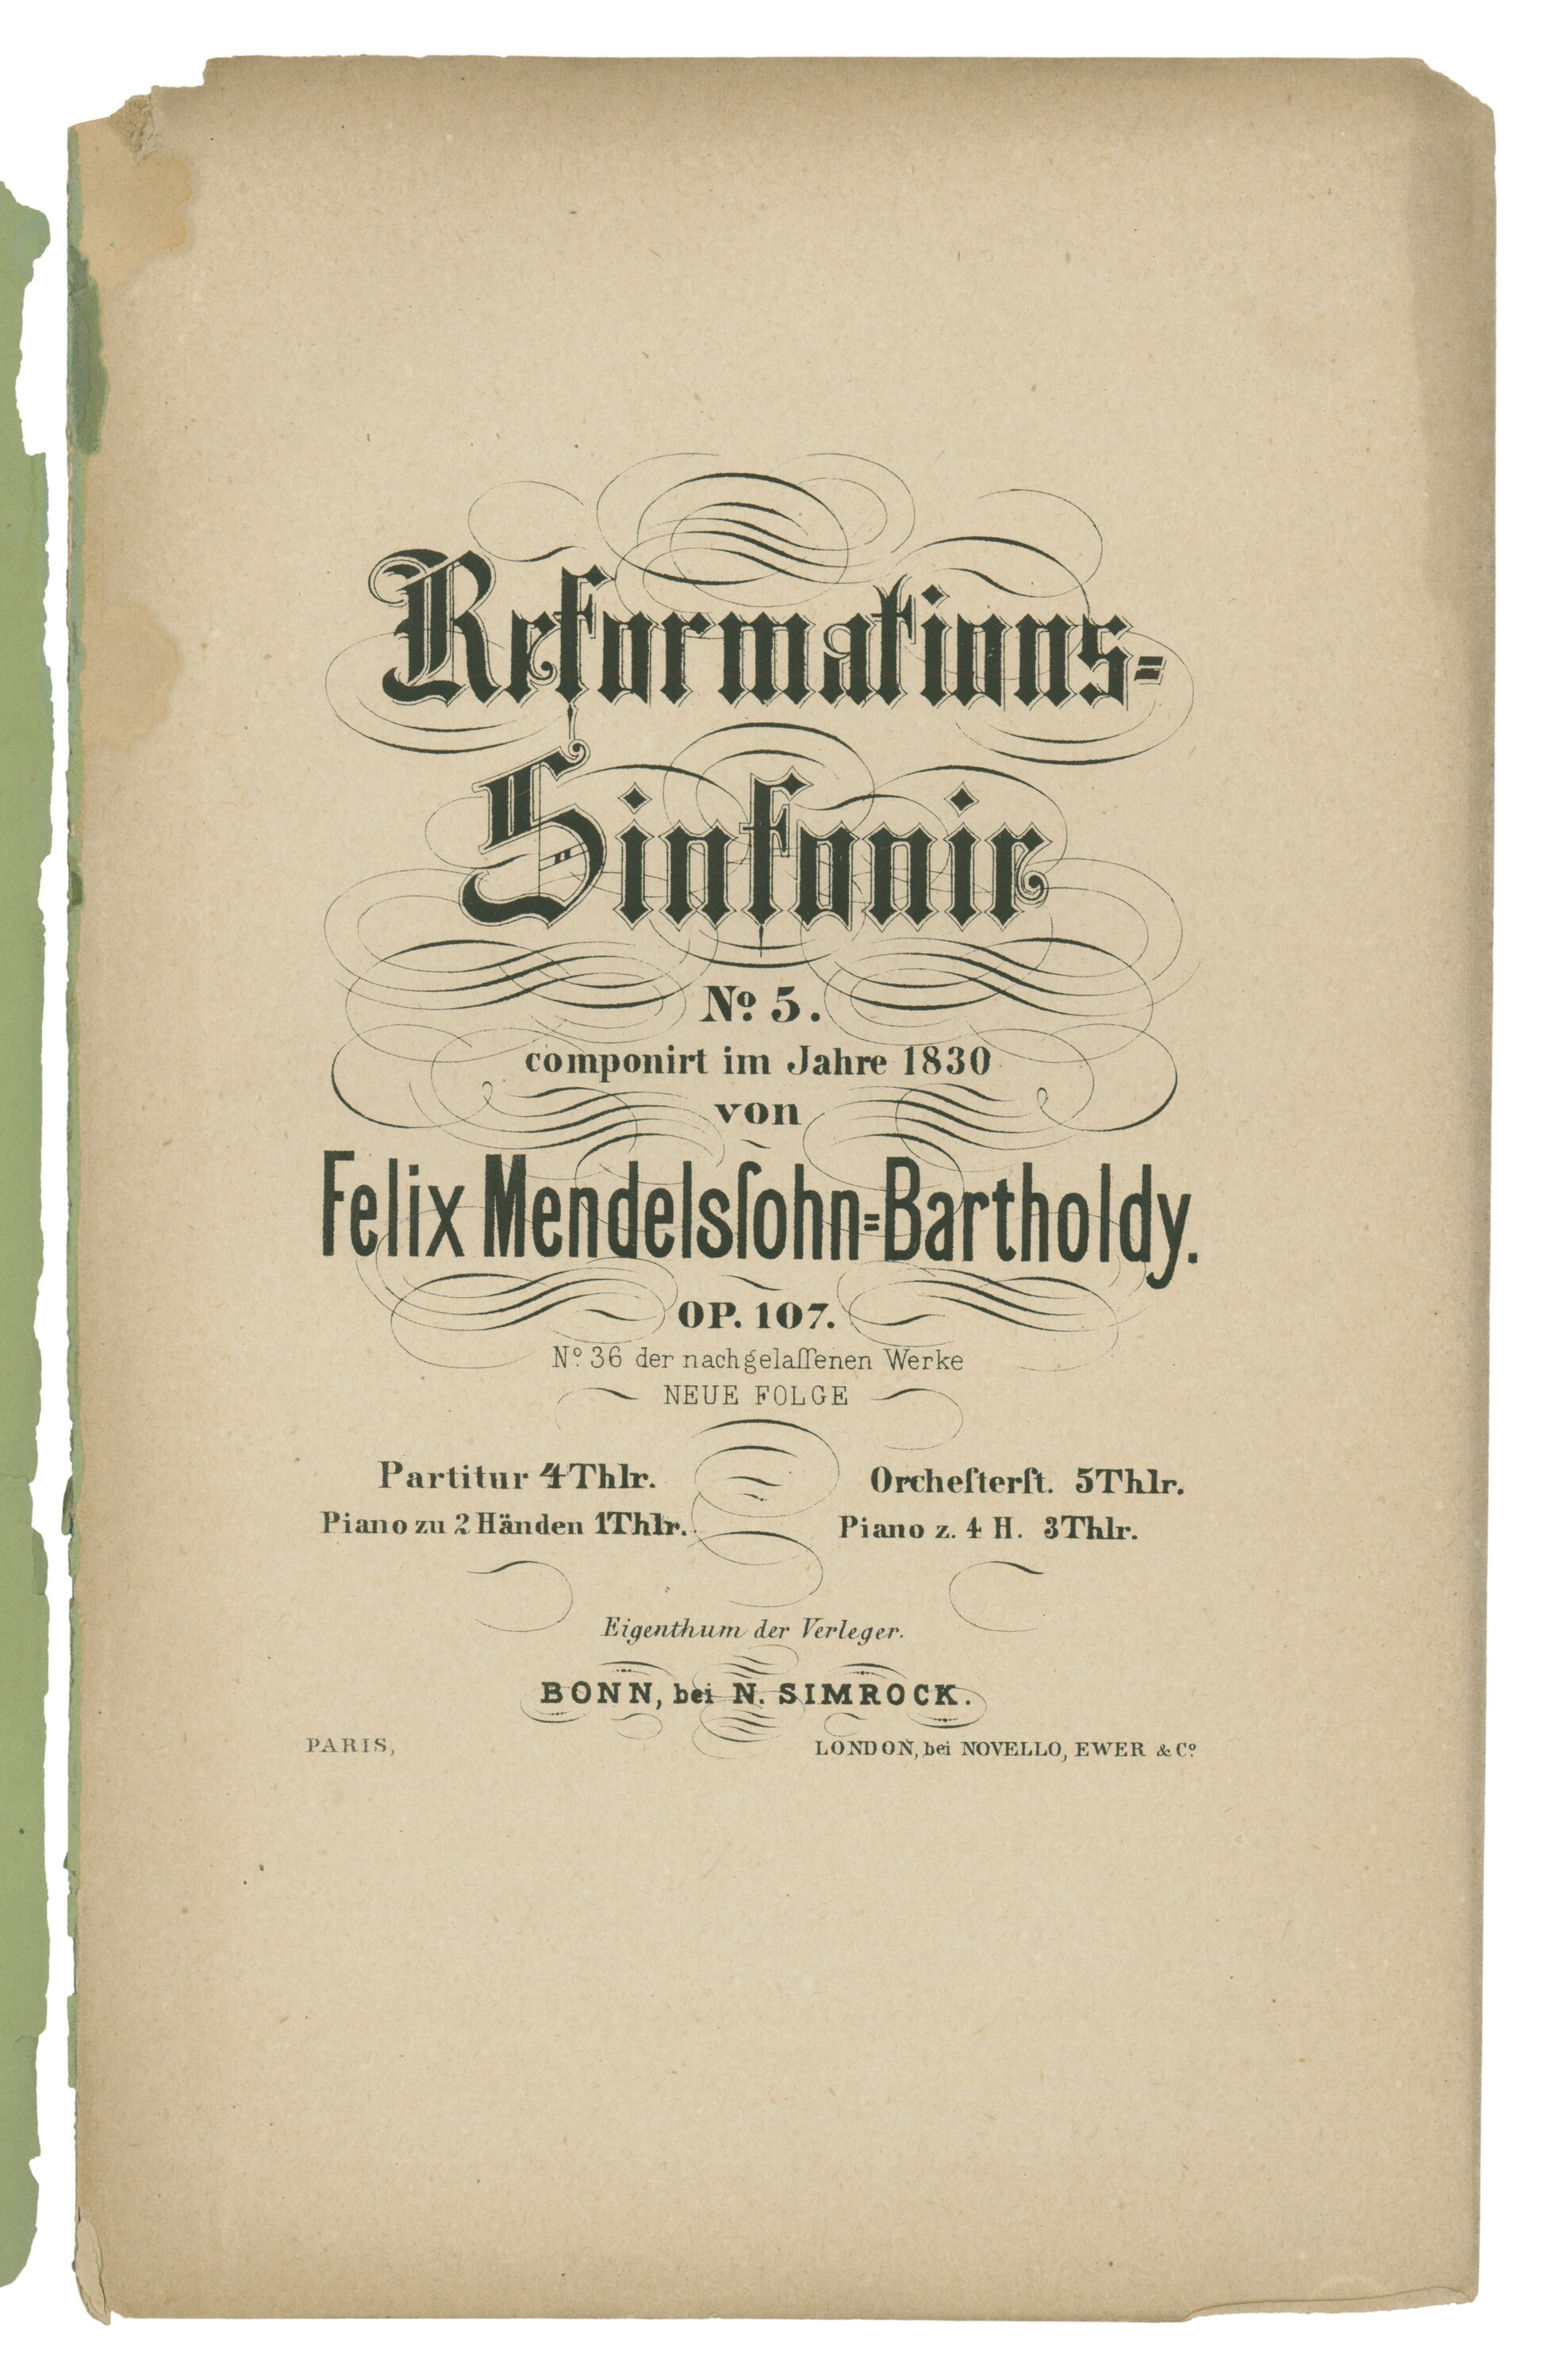 Felix Mendelssohn Bartholdy, Sinfonie d-Moll (»Reformationssinfonie«) (Felix-Mendelssohn-Bartholdy-Stiftung RR-F)